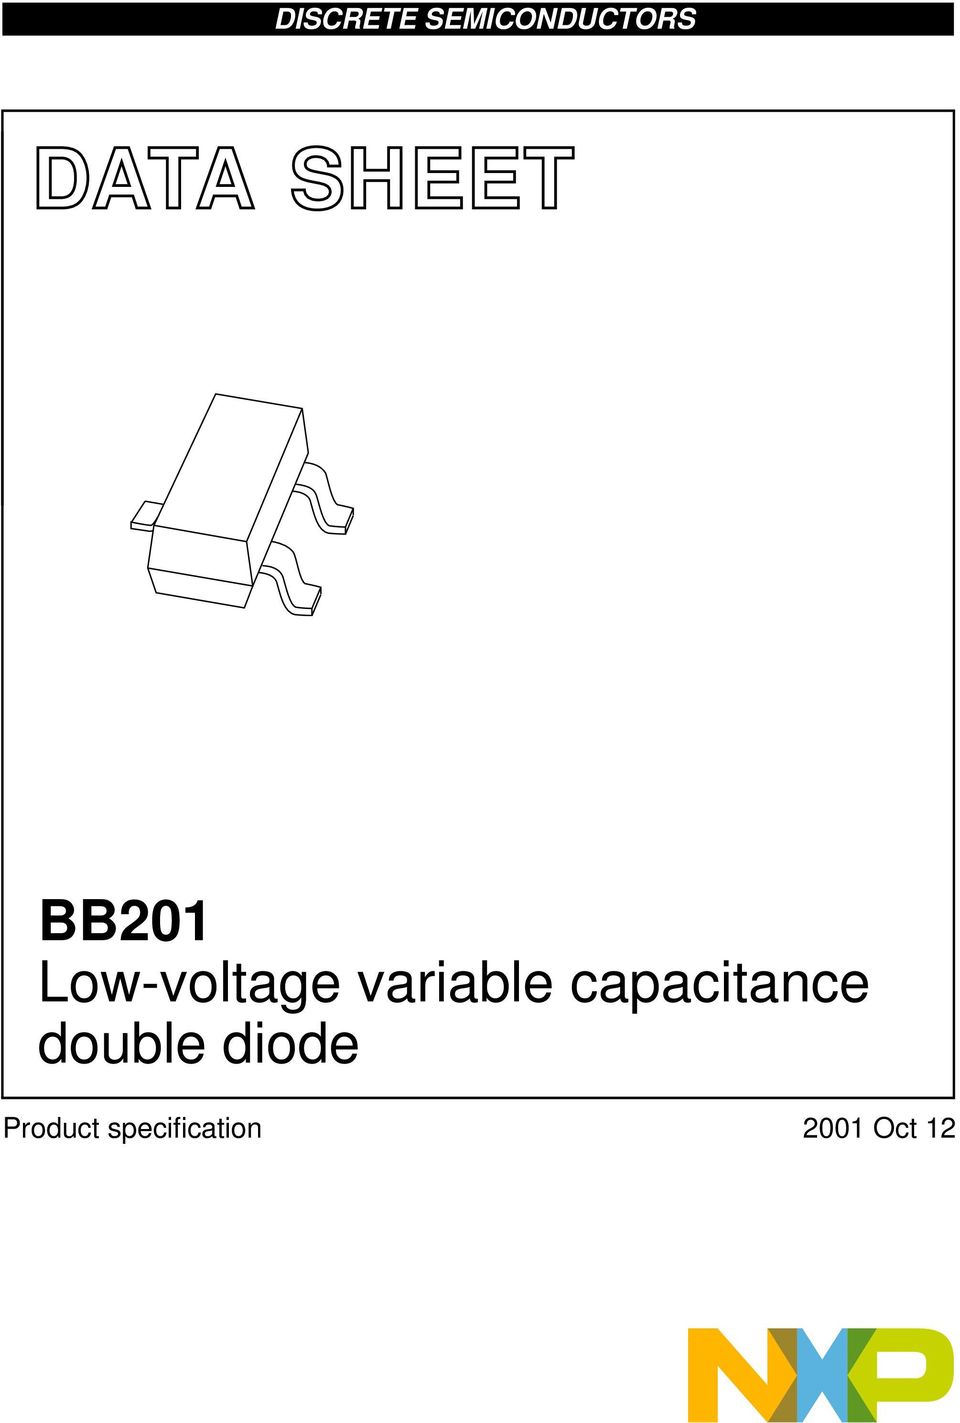 M3D088 Low-voltage variable